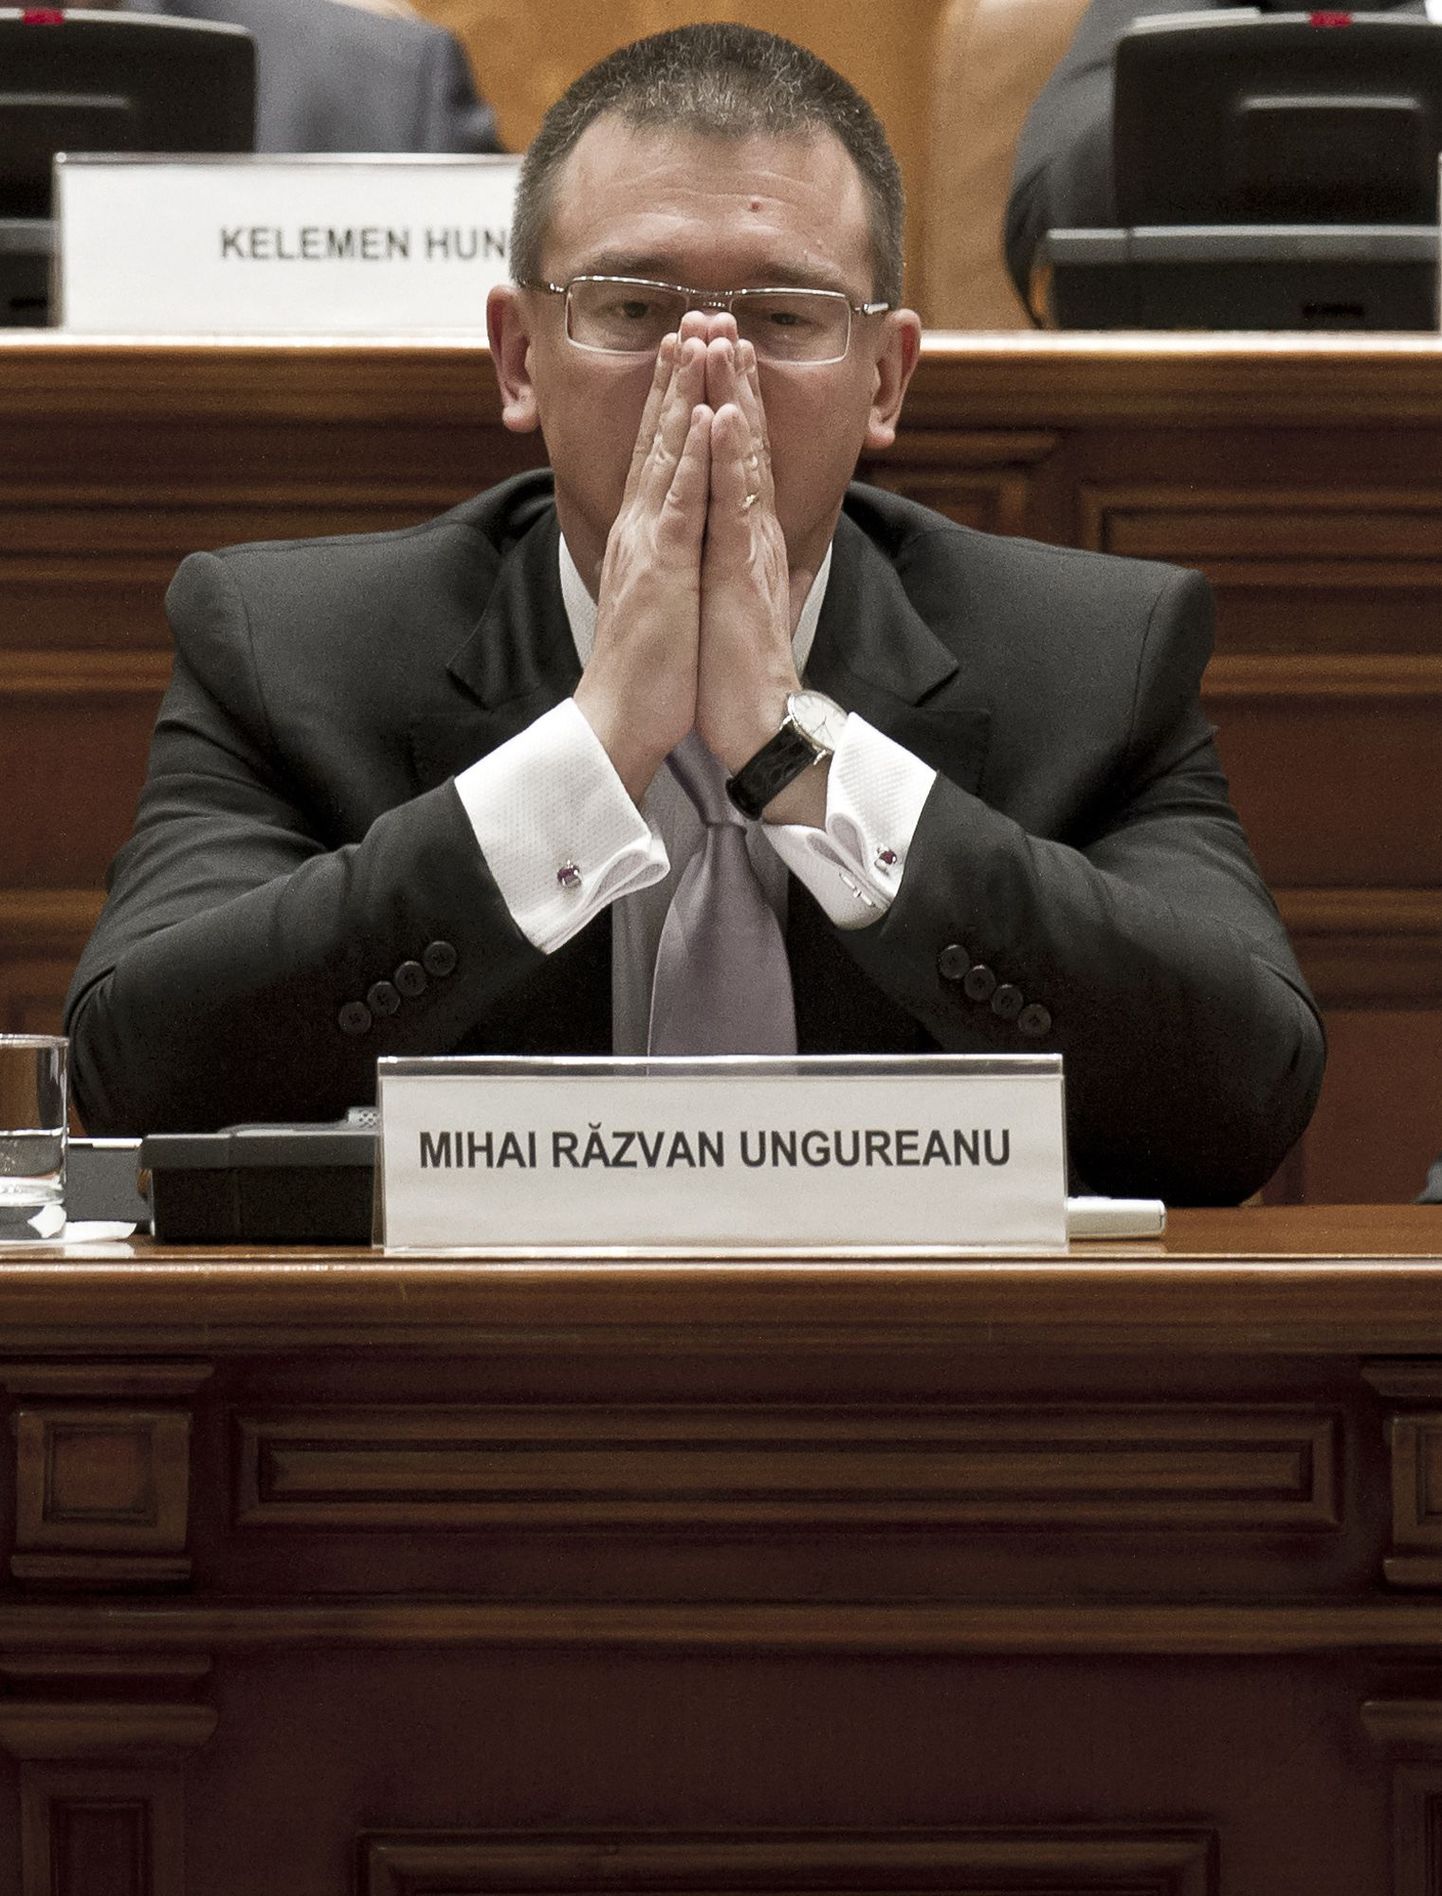 Rumeenia peaminister Mihai Razvan Ungureanu jõudis võimul olla vähem kui kolm kuud.